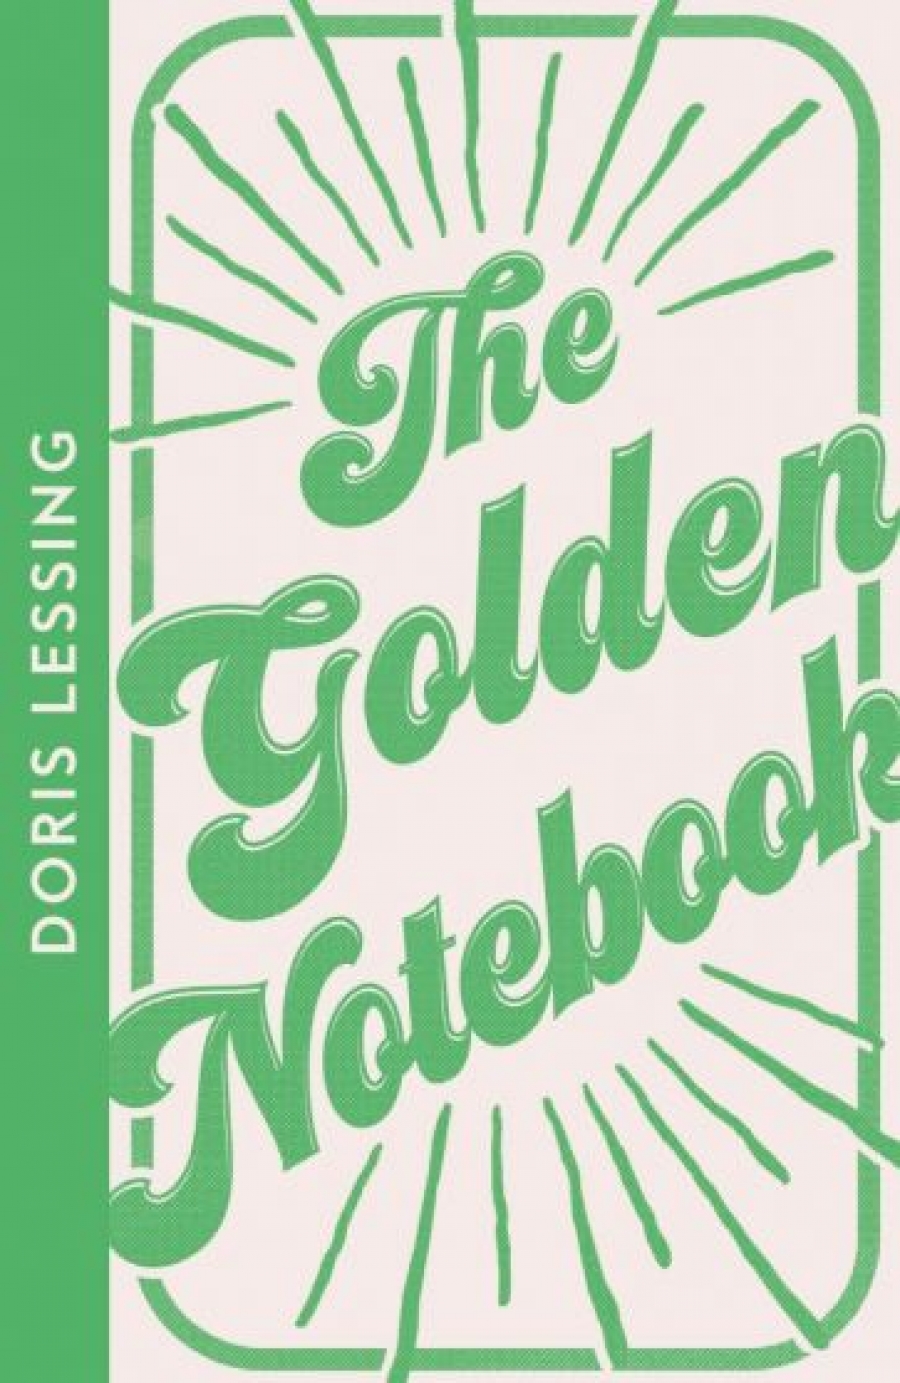 Lessing Doris The Golden Notebook 